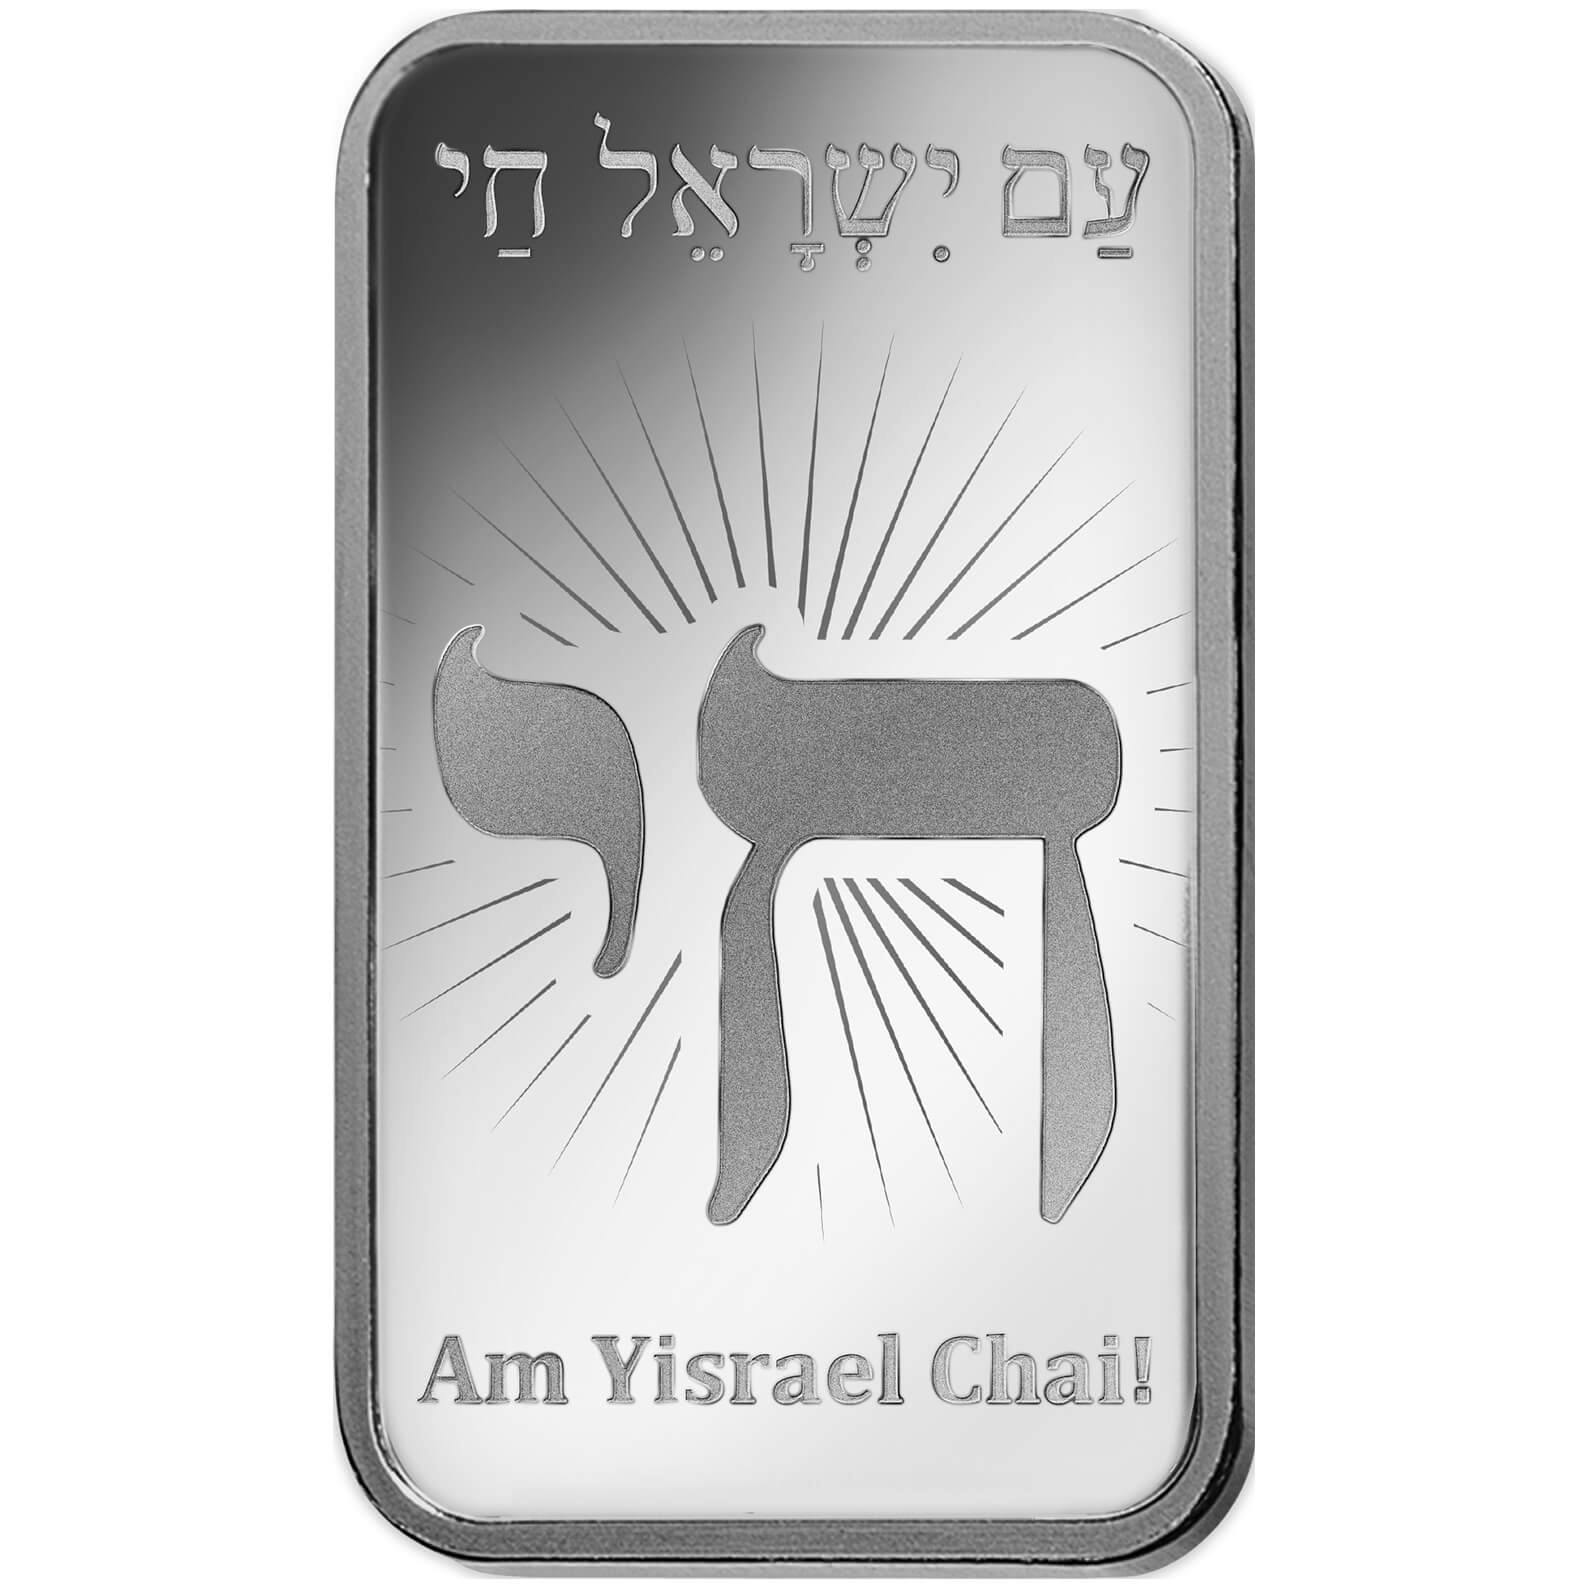 Achat d'argent, 10 gram d'argent pur Am Yisrael Chai - PAMP Suisse - Front 